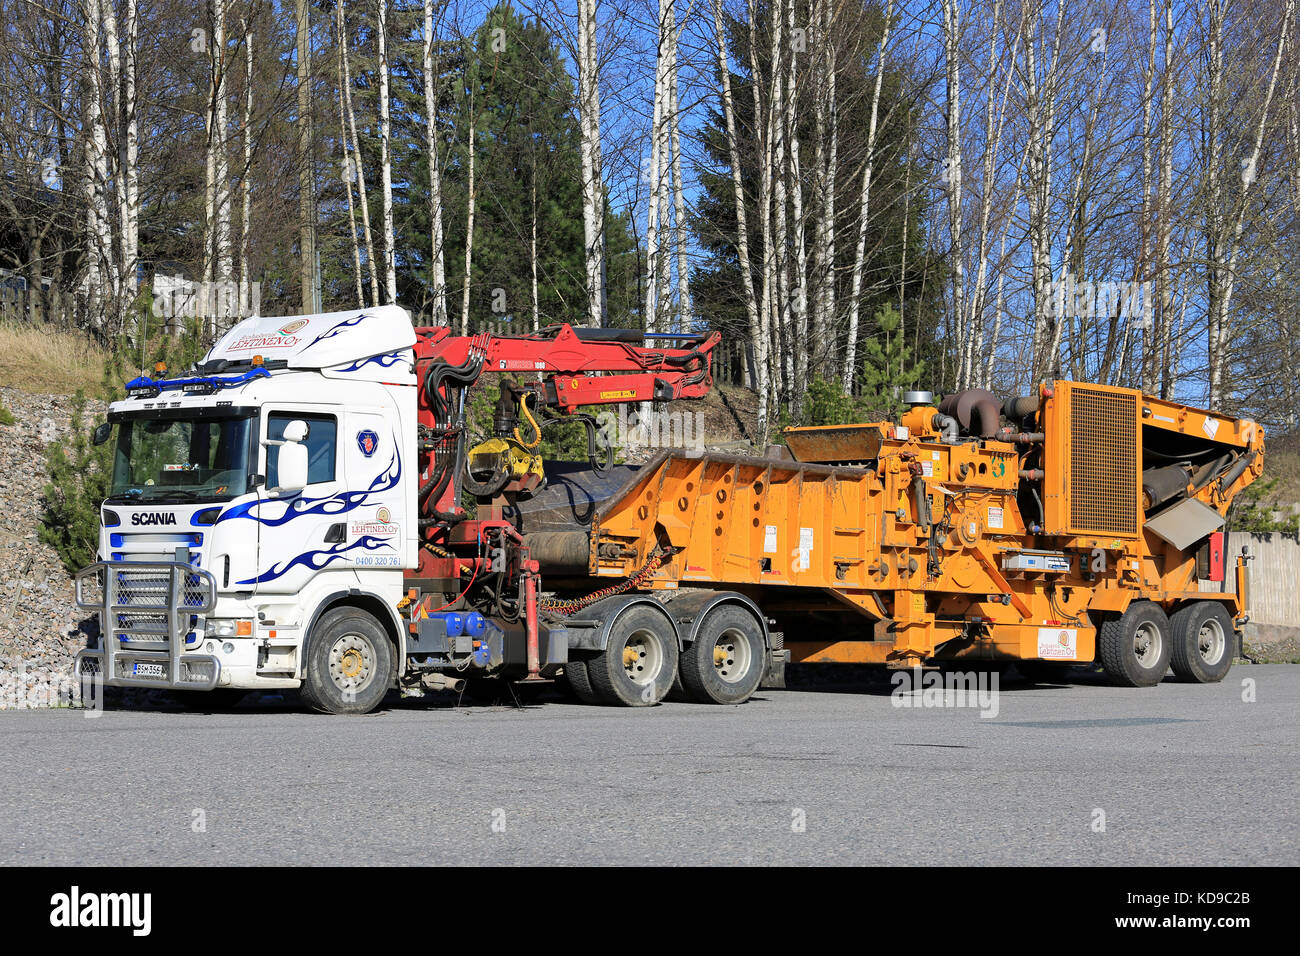 Salo, Finlande - 5 mai 2017 : l'équipement monté sur camion Scania pour recyclage résidus forestiers en stationnement sur un chantier. refuser l'exploitation forestière peut encore être utilisé comme si Banque D'Images